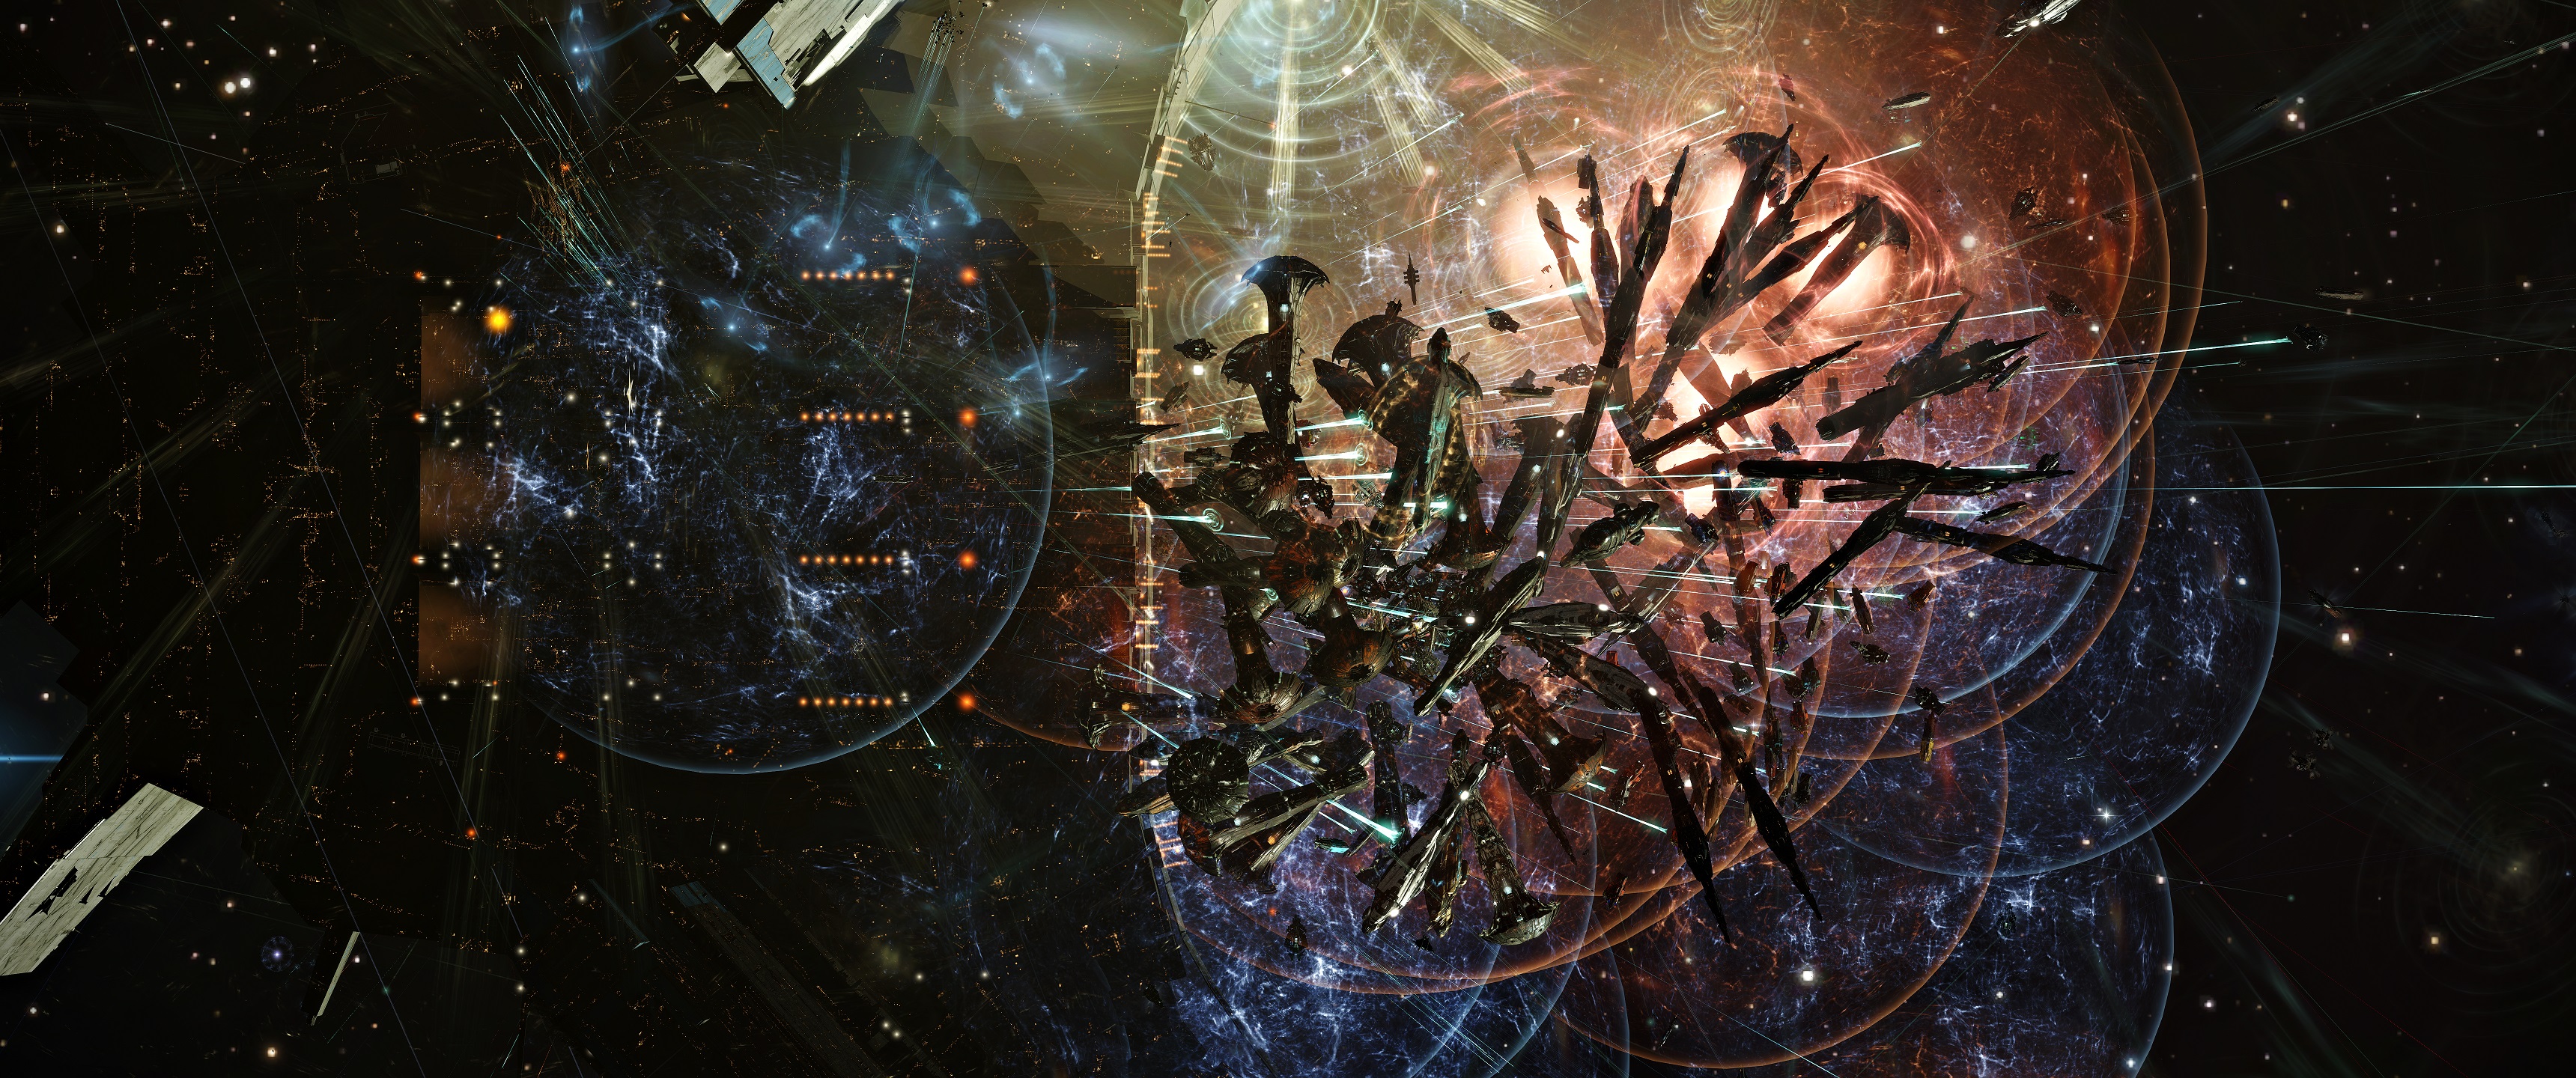 宇宙開拓MMO『EVE Online』で再び“史上最大のプレイヤー間戦争”が勃発。6500名以上のプレイヤーが同時参加し、約14時間の攻防戦を展開_002